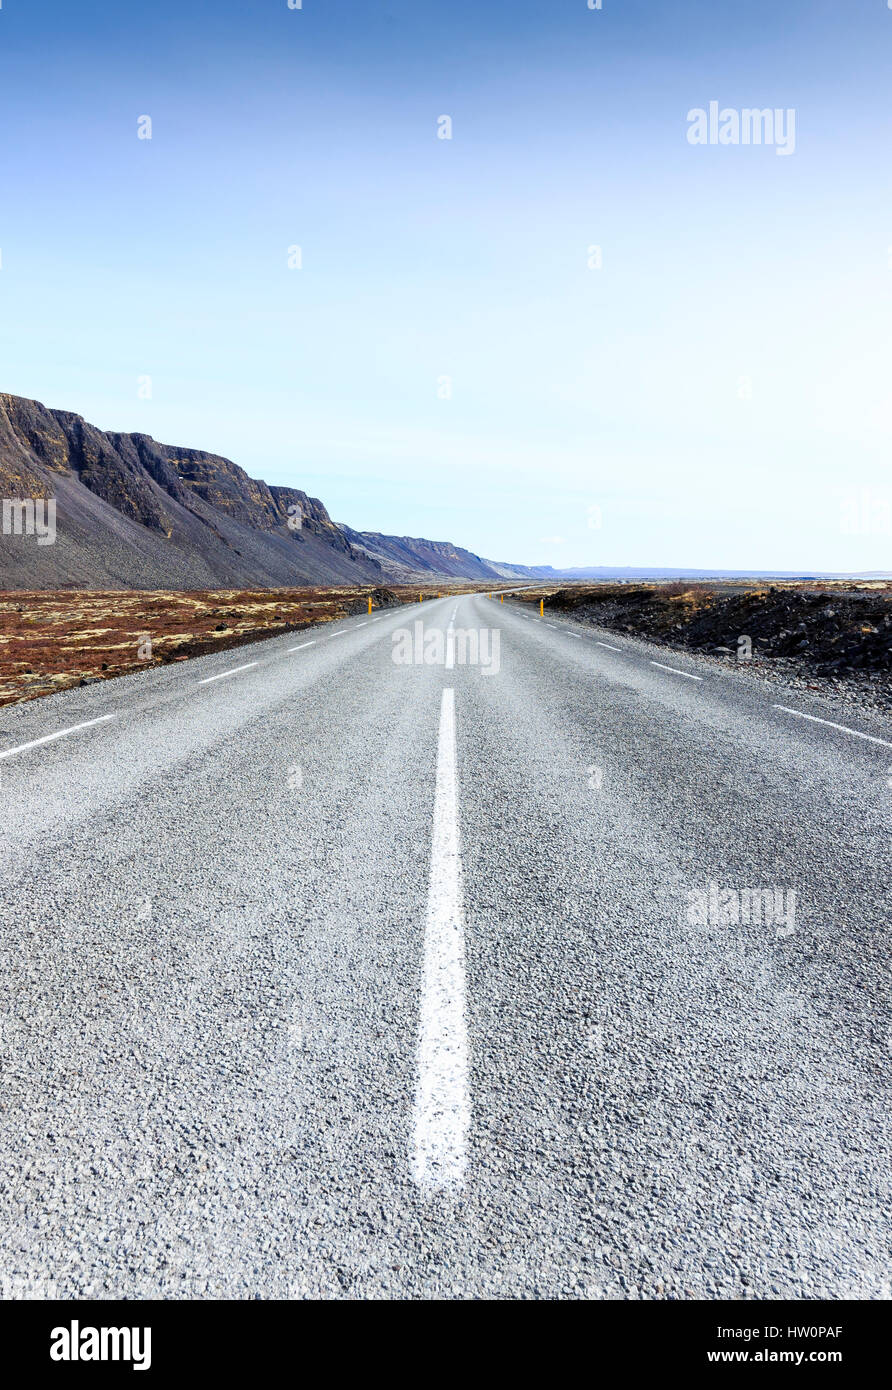 Empty road, Reykjanes Peninsula, Iceland Stock Photo